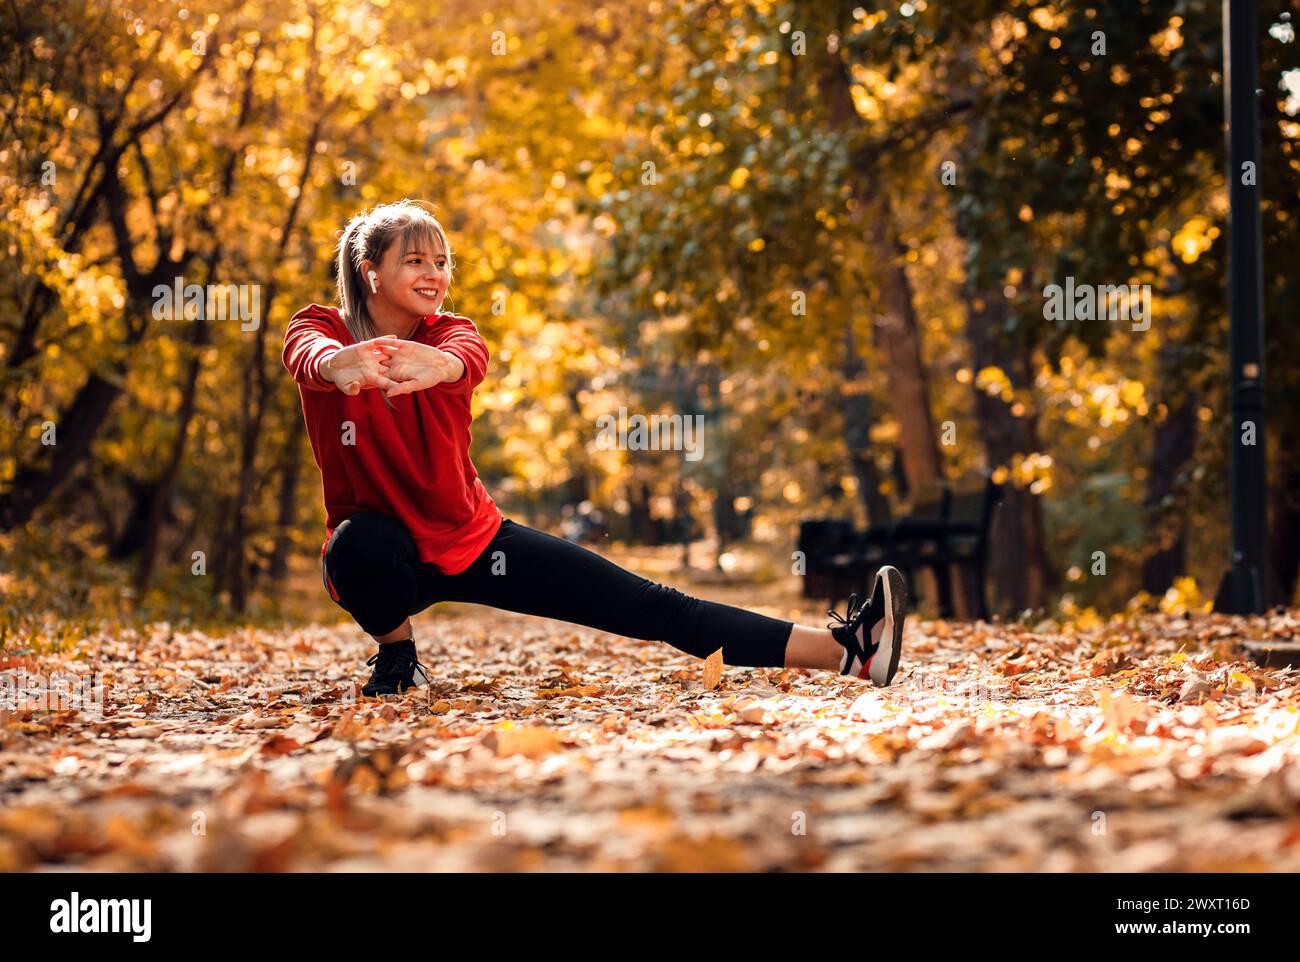 Junge Frau, die sich aufwärmt und sich dehnt, bevor sie im Park läuft. Stockfoto